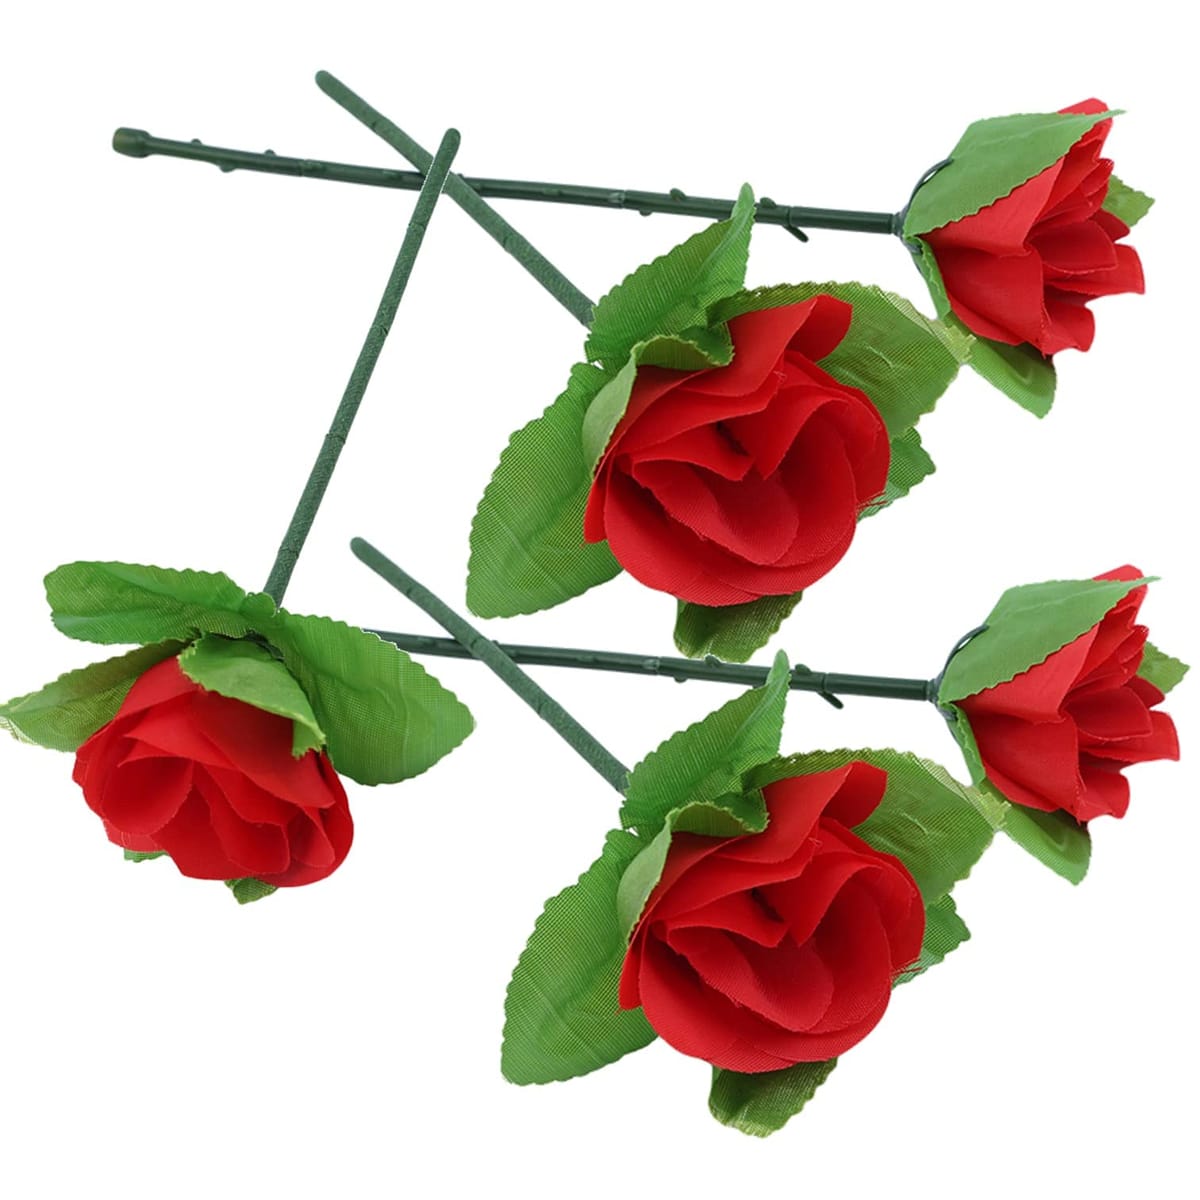 EXDUCT フラワー マジック 5個 セット 手品 バラ 薔薇 ばら サプライズ 一発芸 パーティー プレゼント グッズ 花束